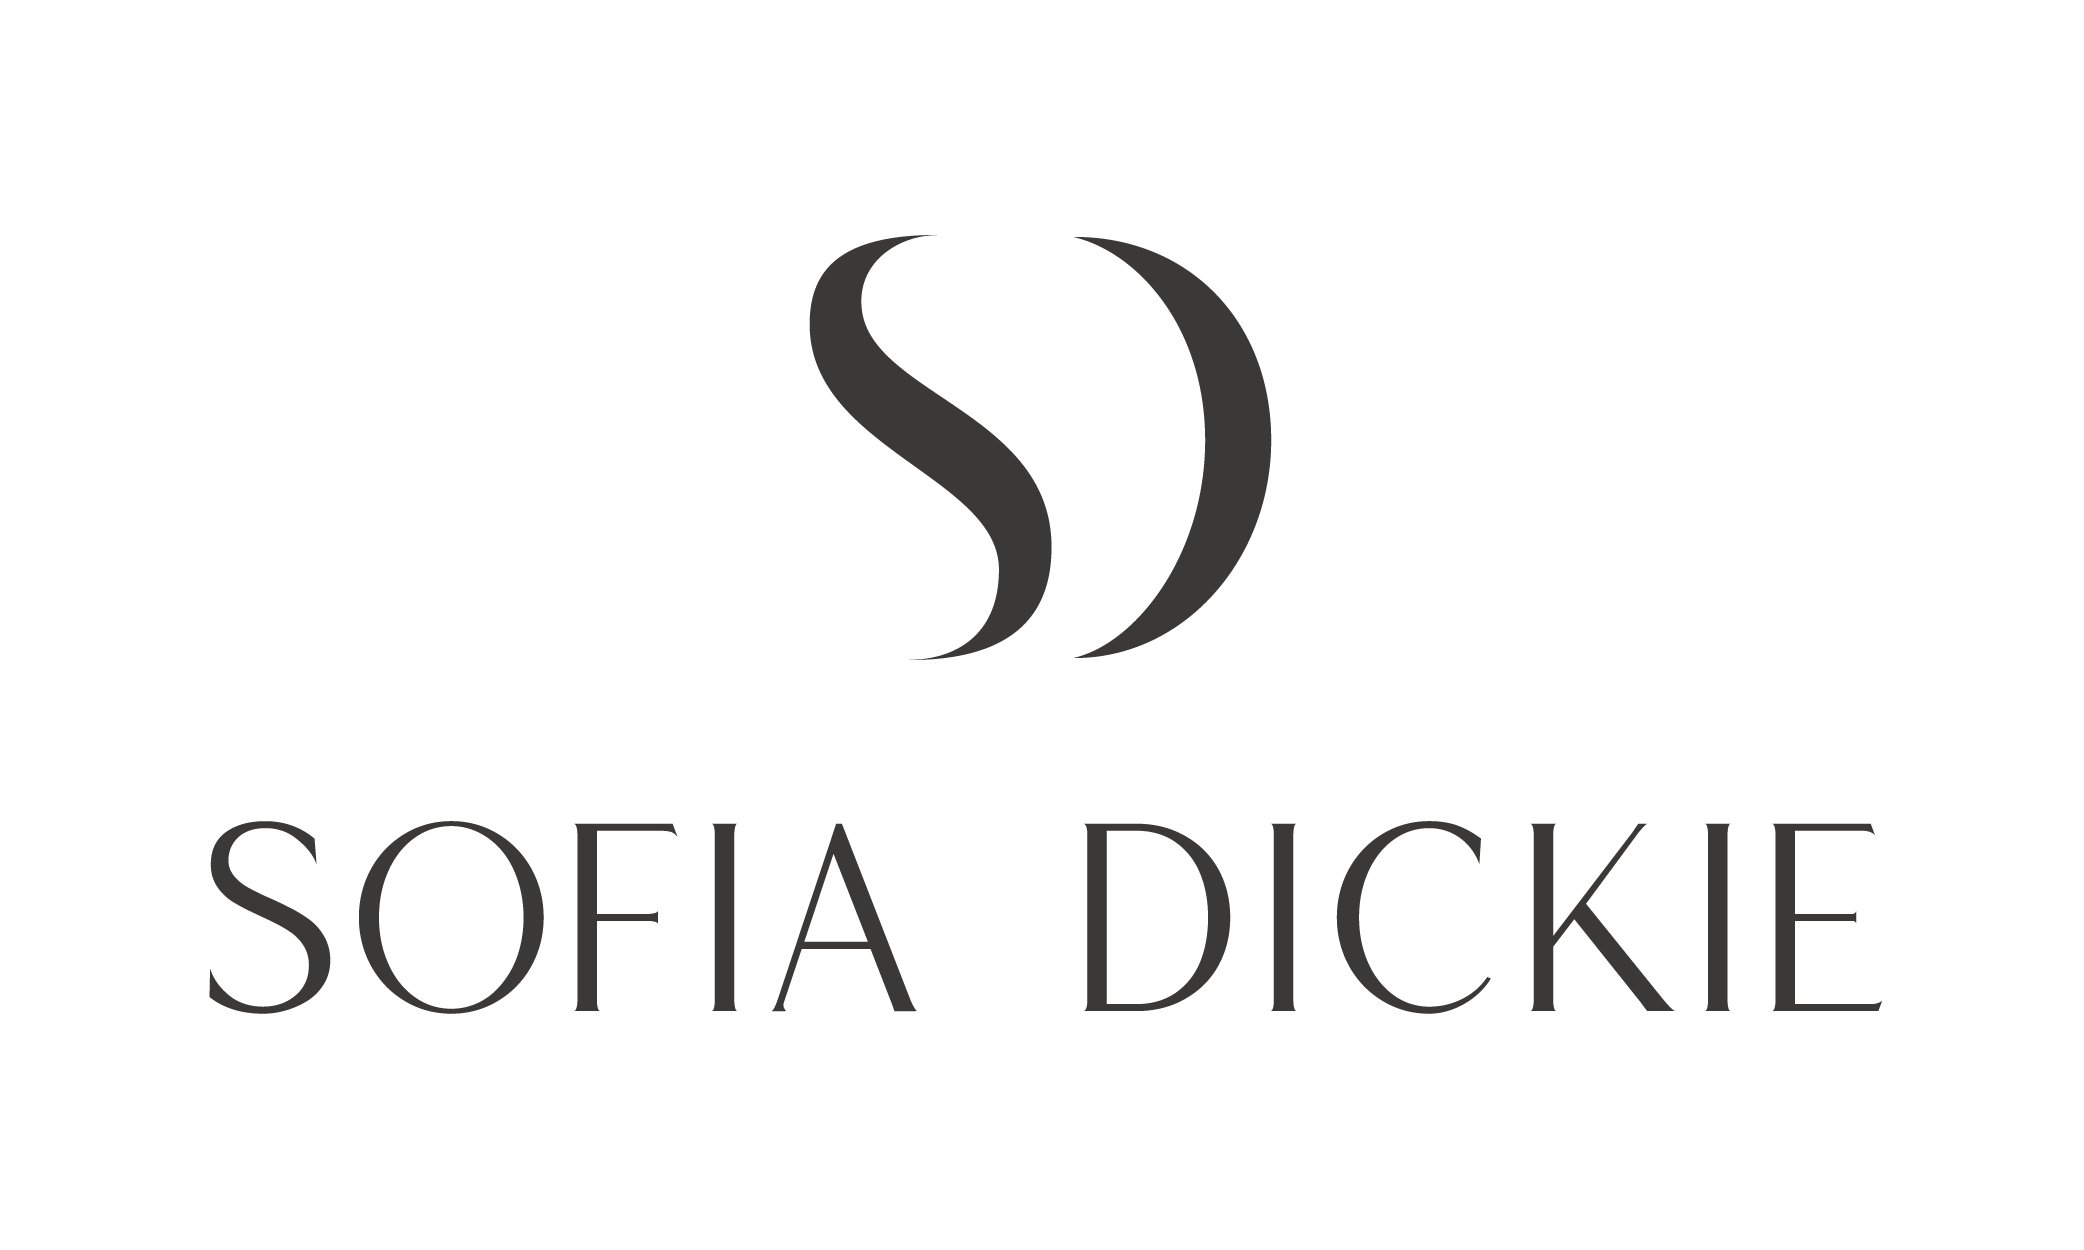 Sofia Dickie